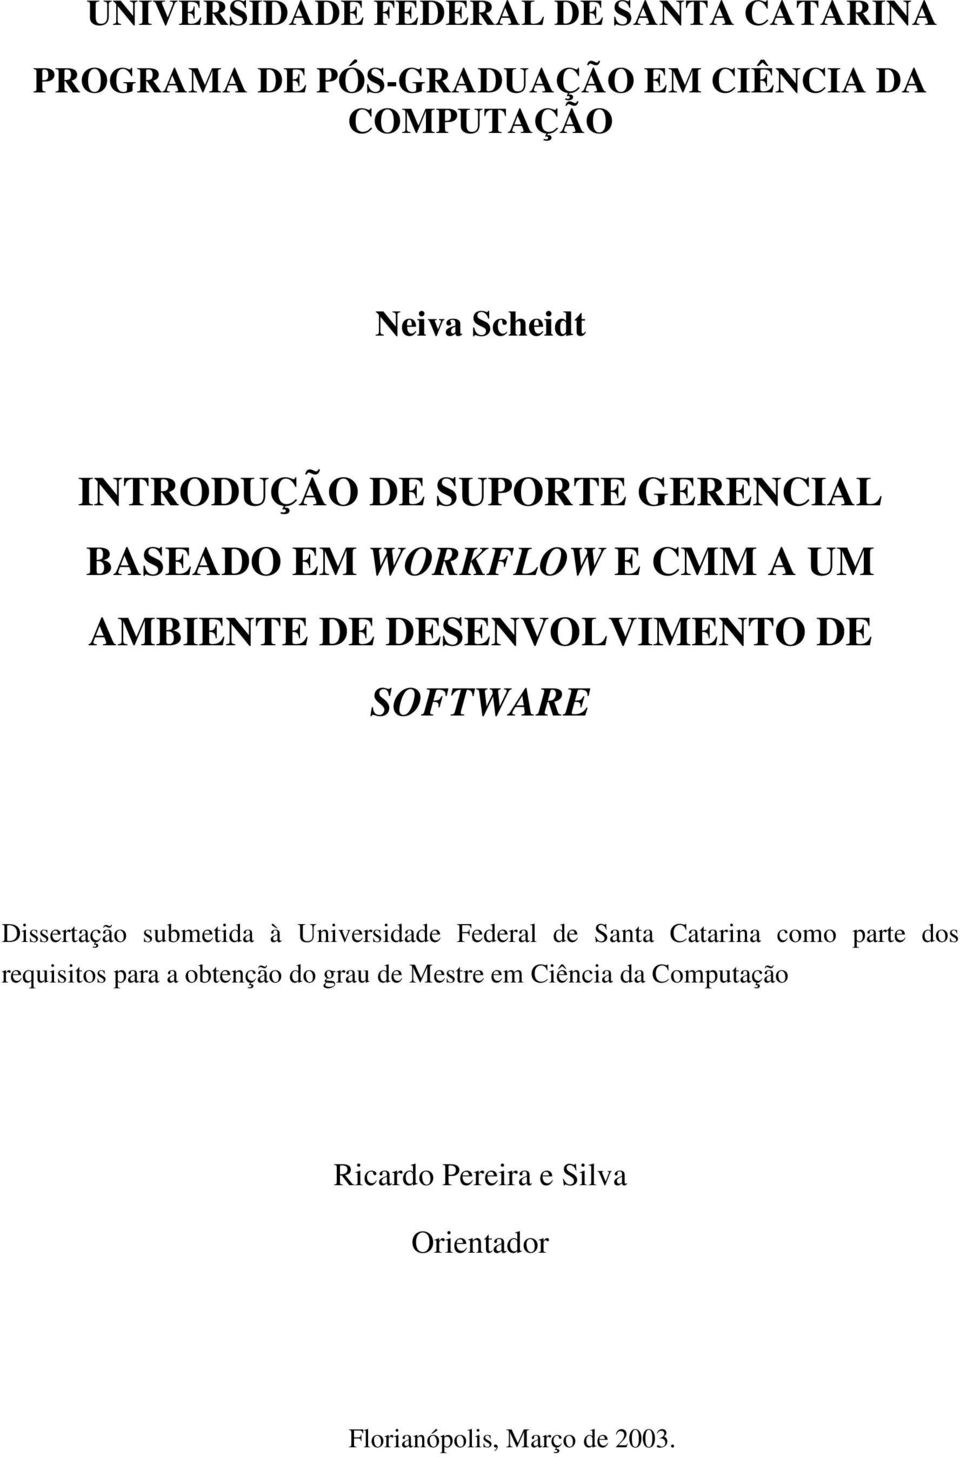 Dissertação submetida à Universidade Federal de Santa Catarina como parte dos requisitos para a obtenção